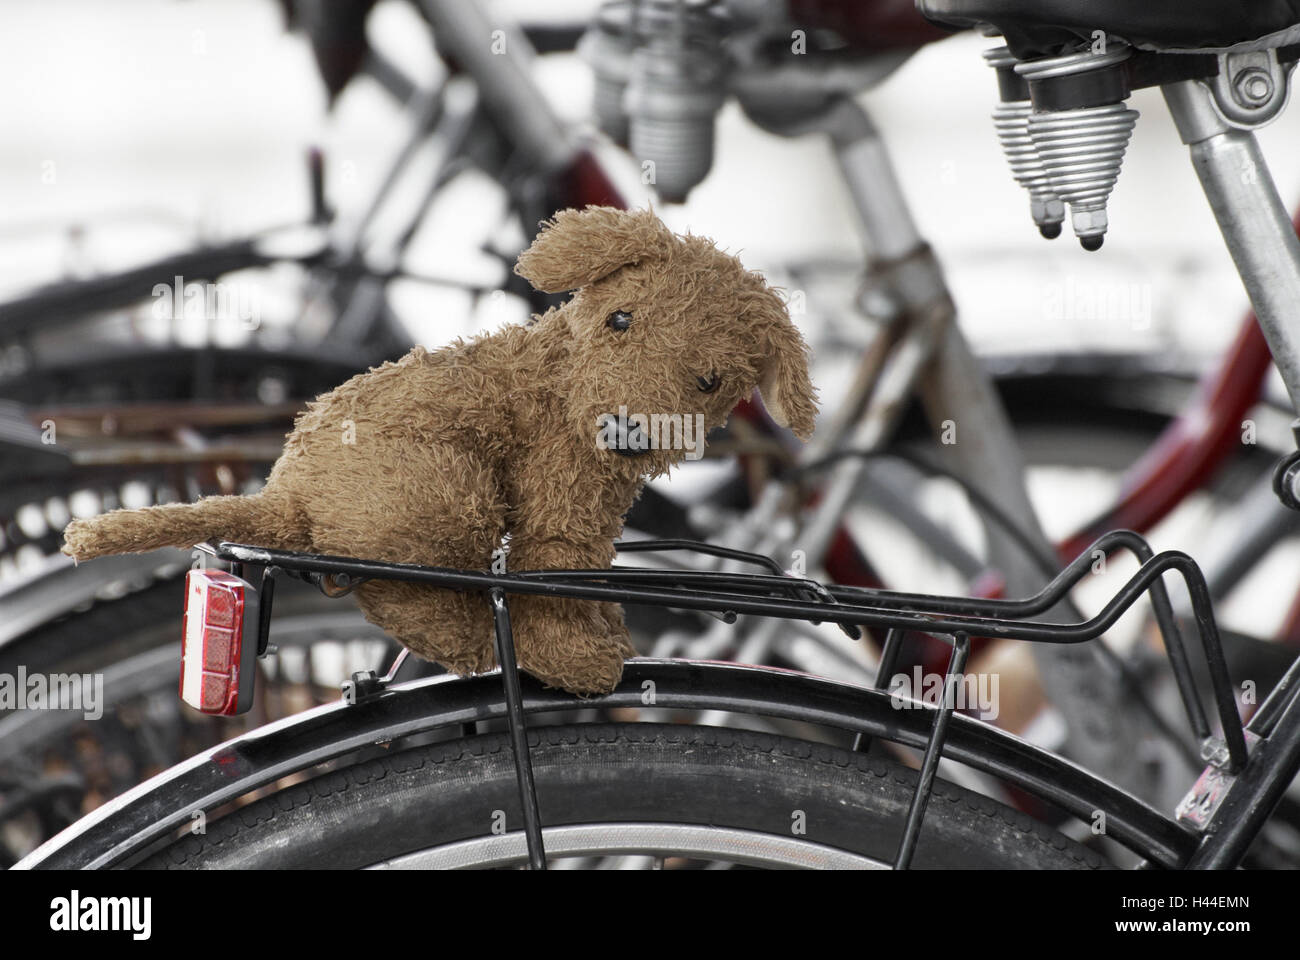 Peluche, bicicletas, pannier rack, luz trasera, neumáticos, sillín,  close-up, detalle Fotografía de stock - Alamy